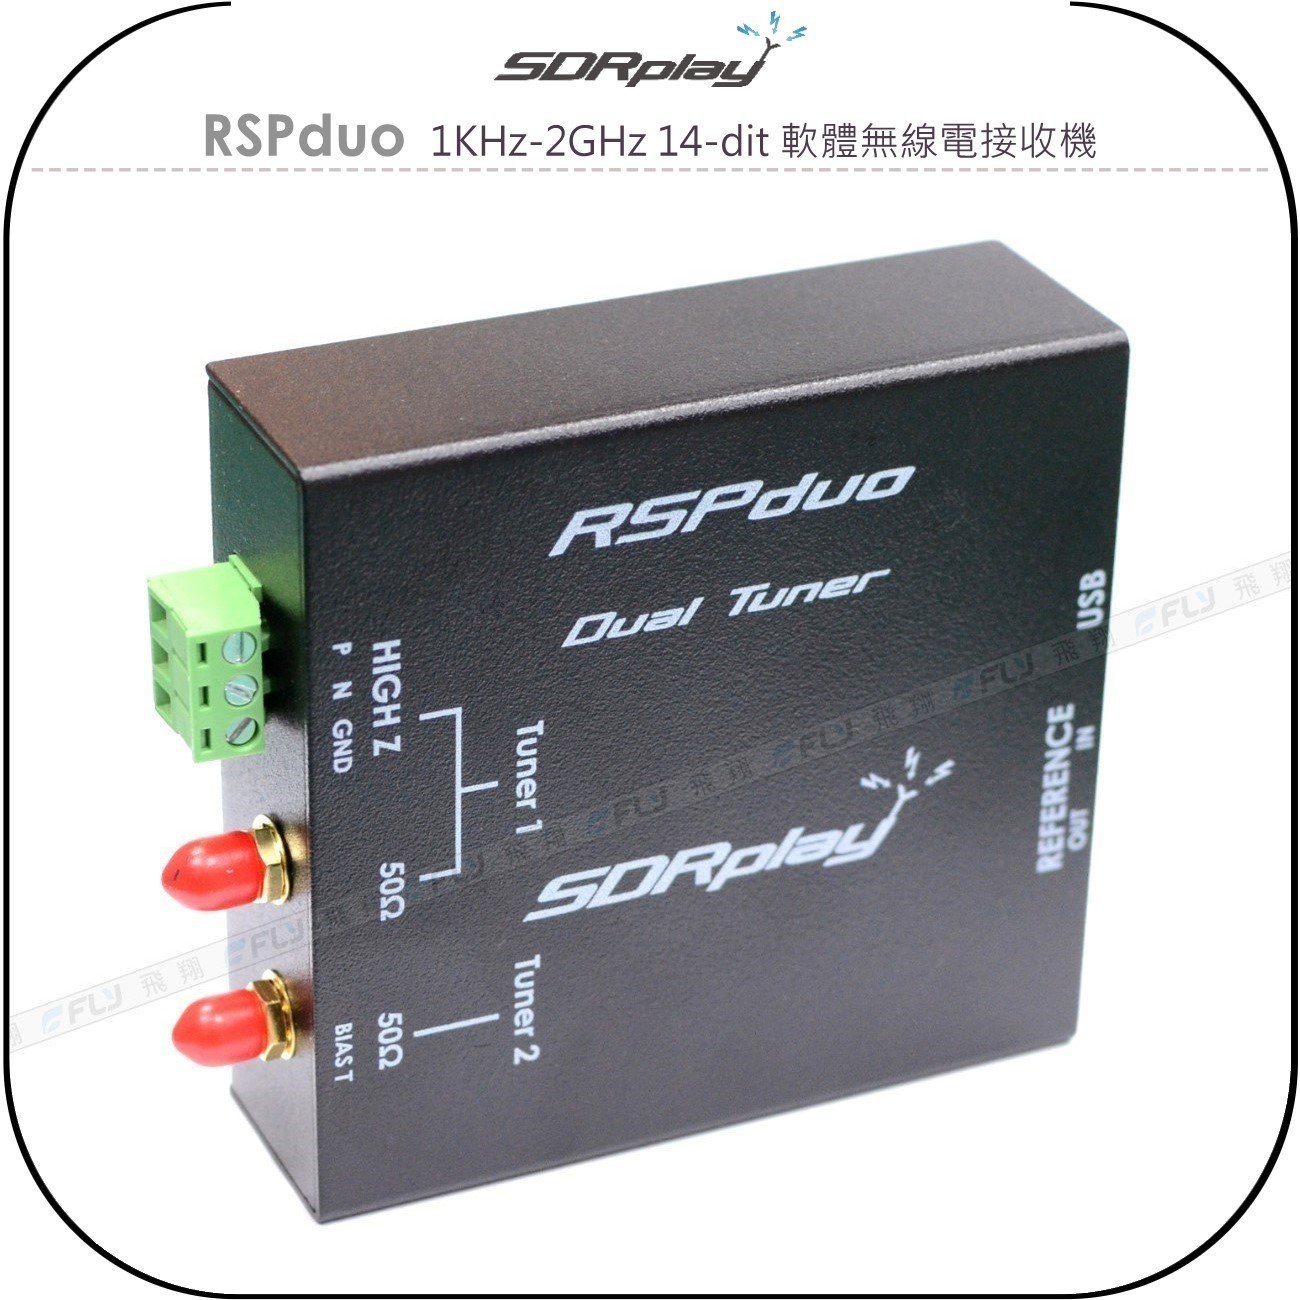 《飛翔無線3C》SDRplay RSPduo 1KHz-2GHz 14-dit 軟體無線電接收機◉公司貨◉SDR